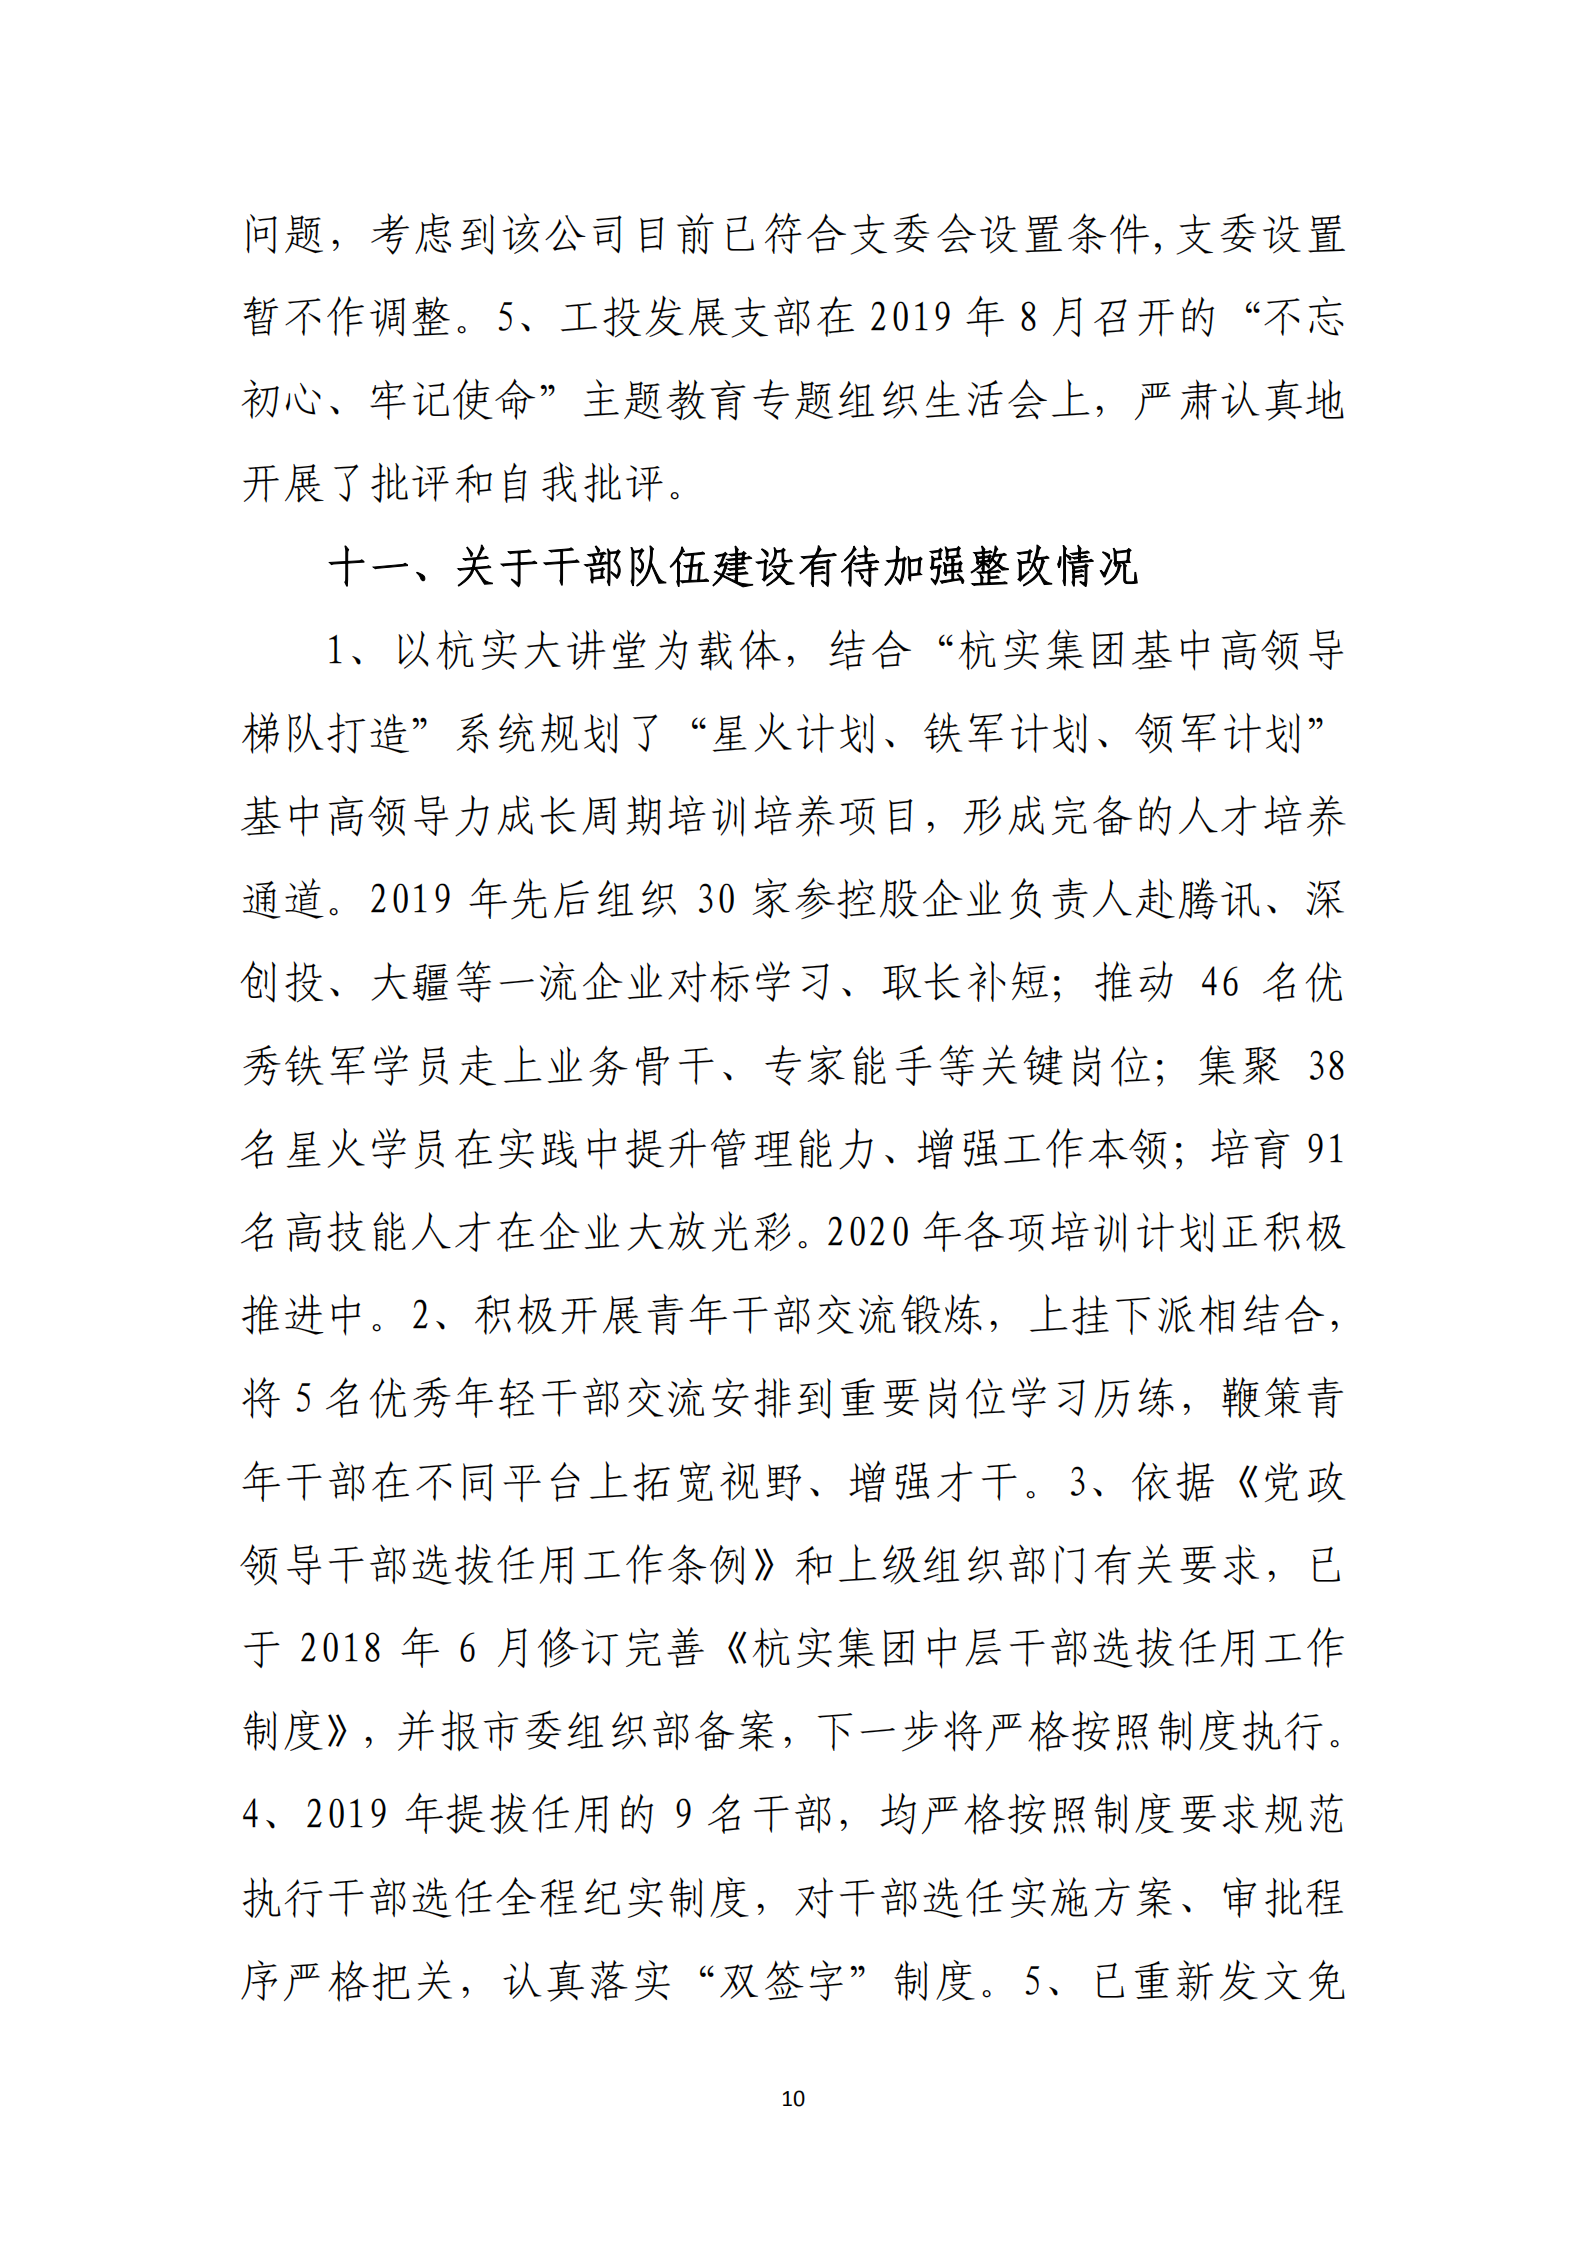 博乐体育网页【中国】有限公司党委关于巡察整改情况的通报_09.png